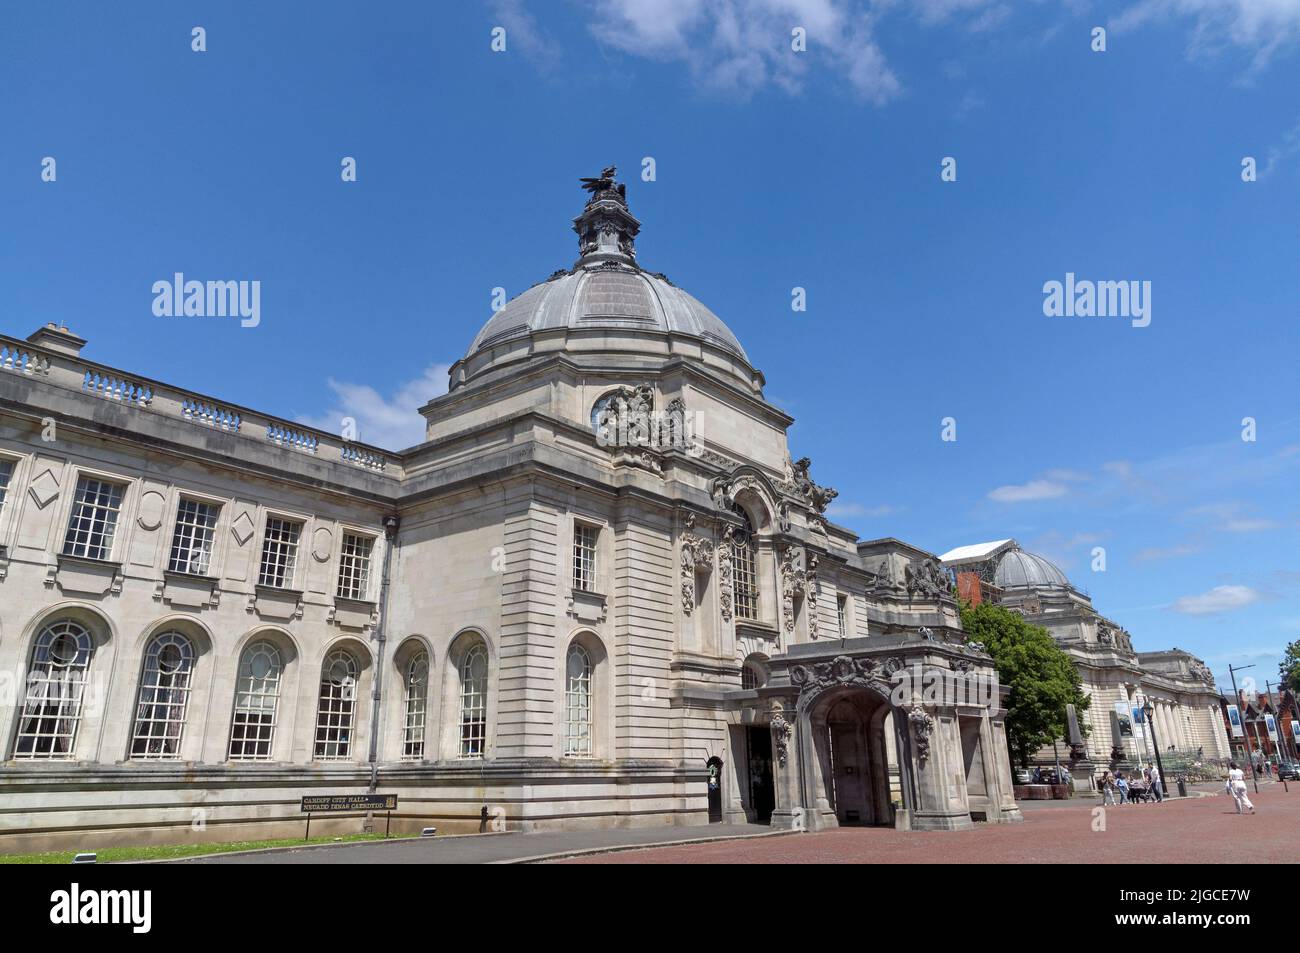 Hôtel de ville de Cardiff avec statue de dragon sur la coupole du toit. Été 2022. Juillet. Ciel bleu, nuage clair. Statue du dragon gallois - Henry Charles Fehr Banque D'Images